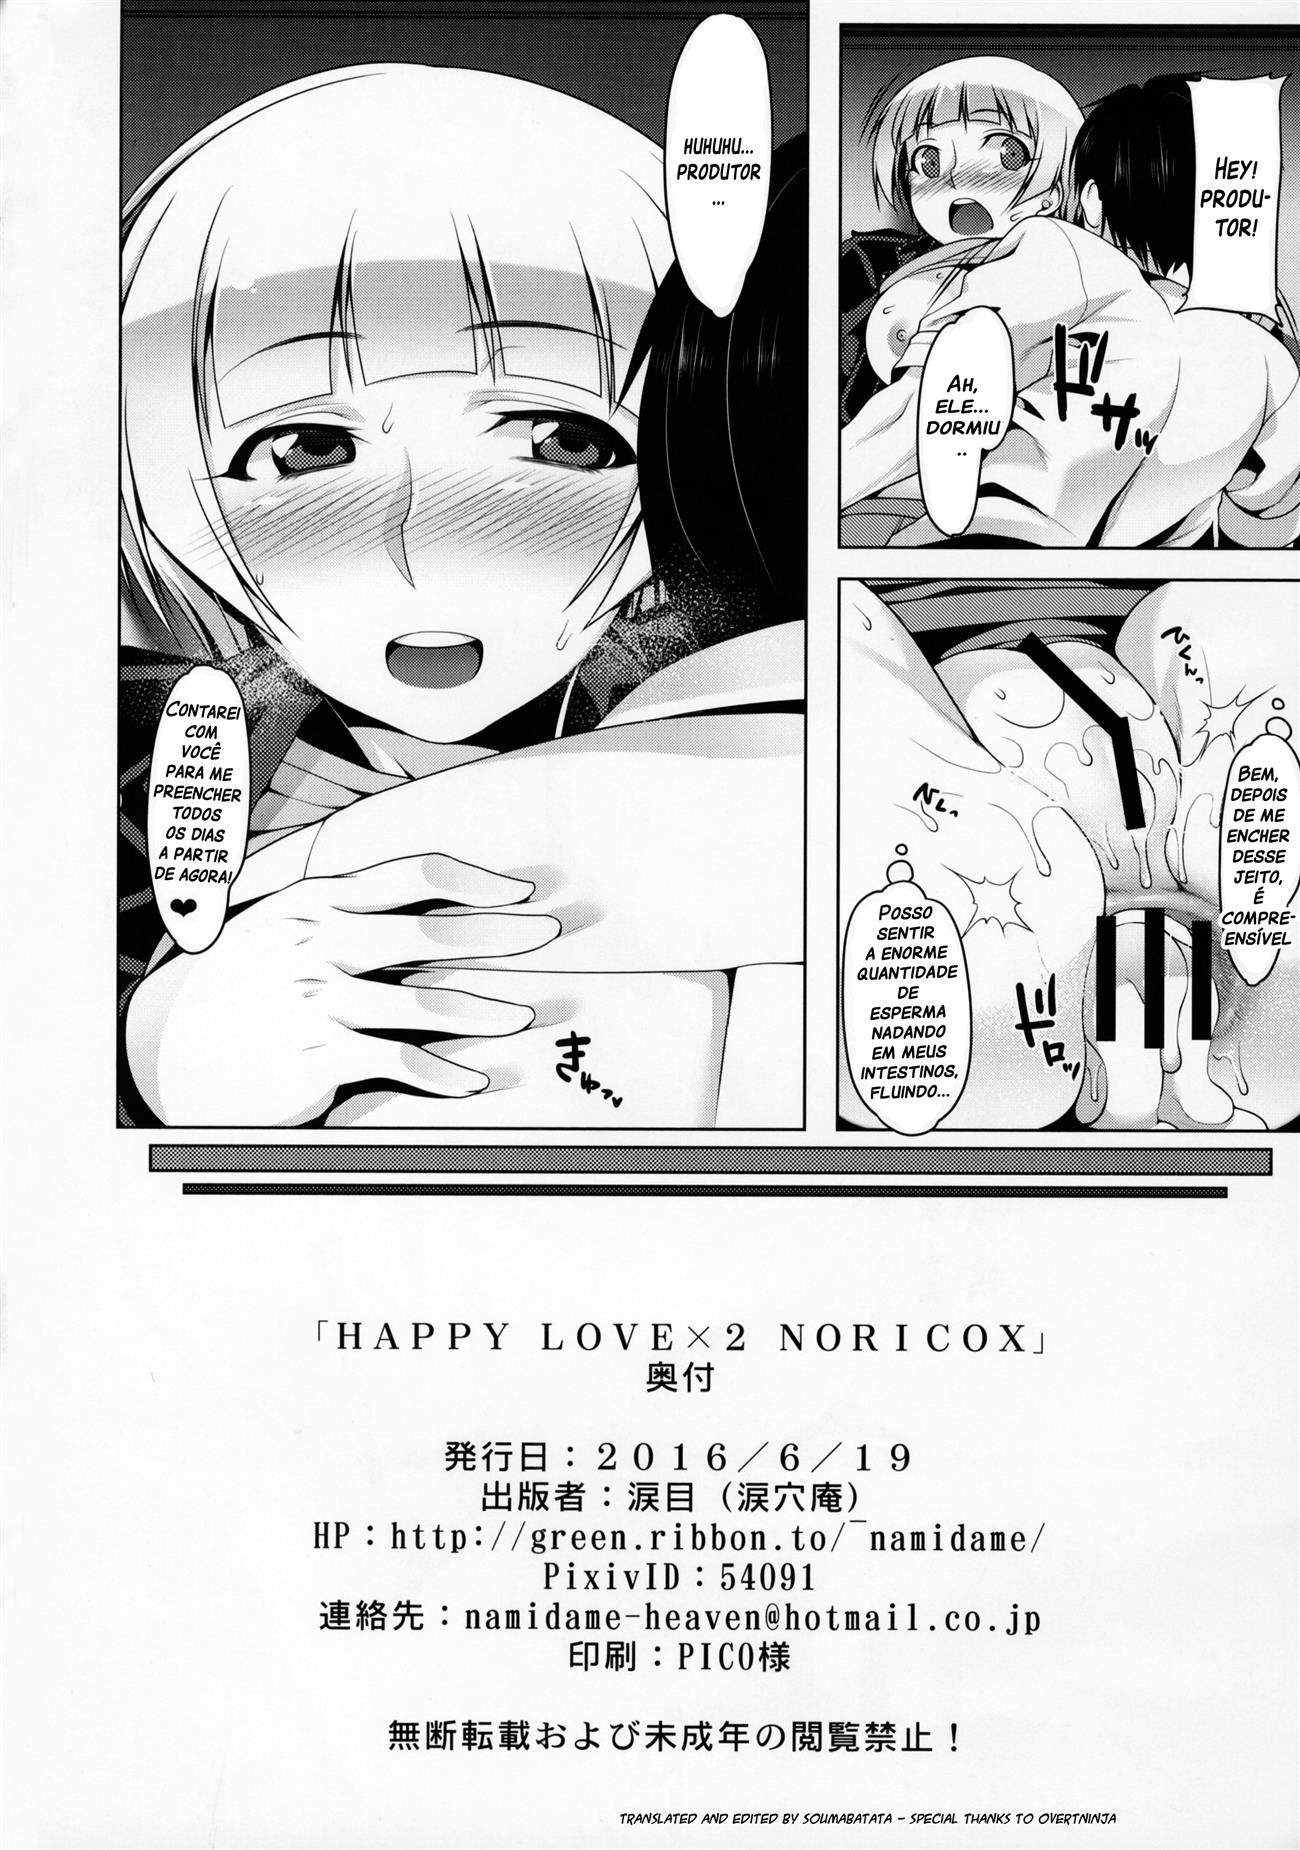 Happy lovex2 noricox